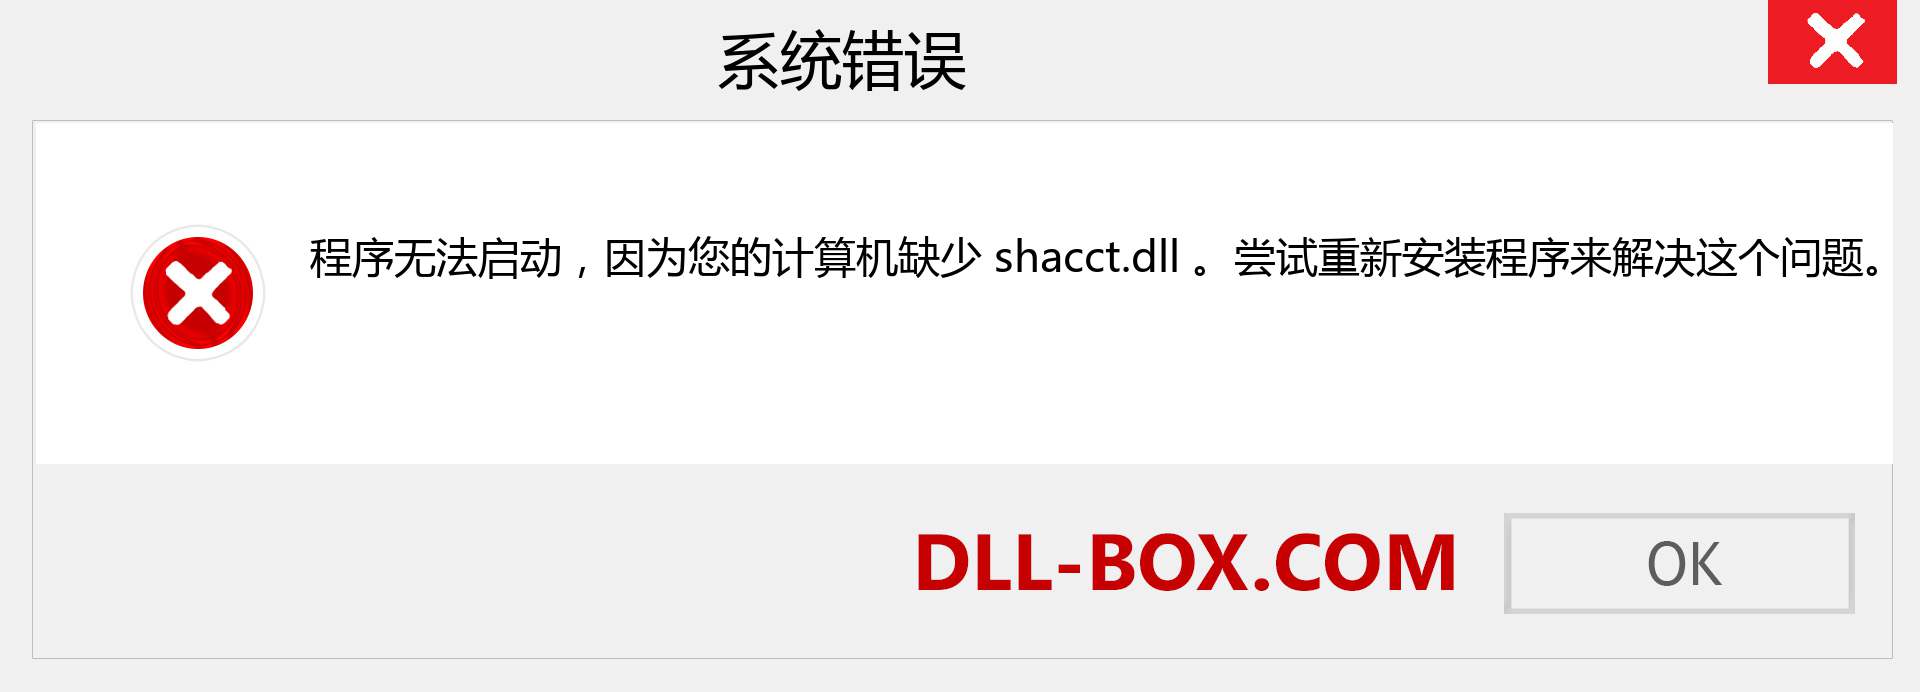 shacct.dll 文件丢失？。 适用于 Windows 7、8、10 的下载 - 修复 Windows、照片、图像上的 shacct dll 丢失错误